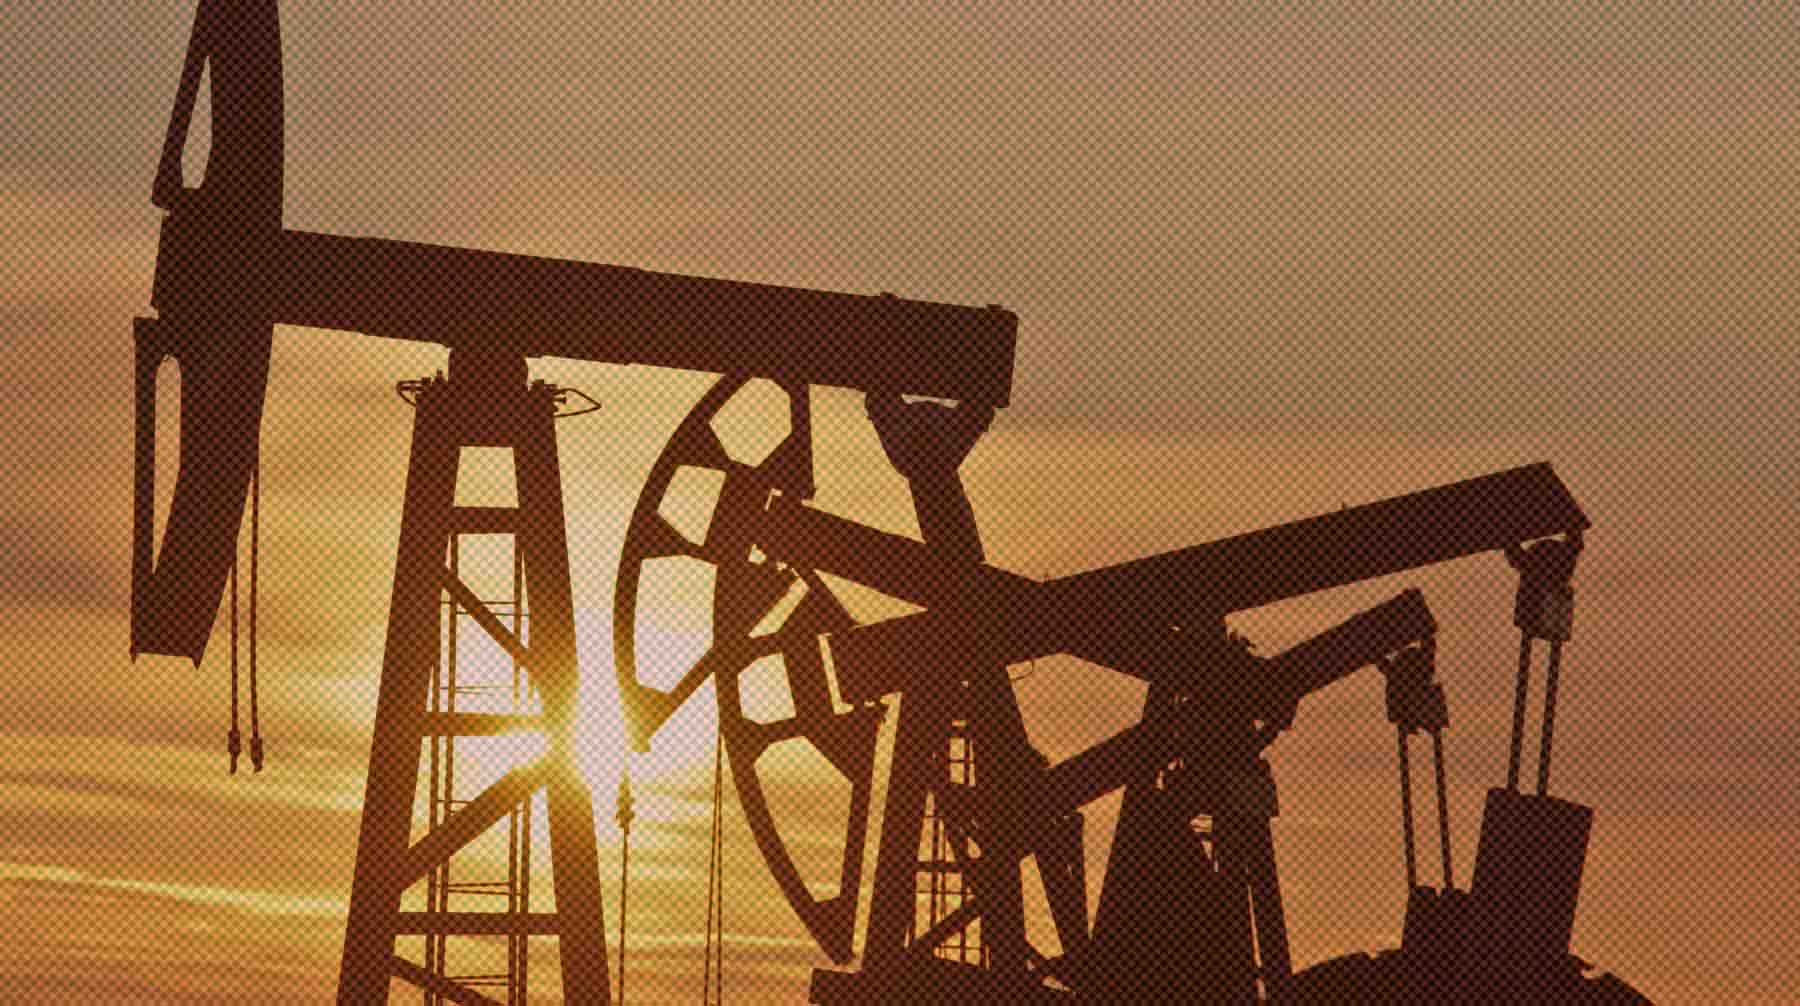 Нефти и газа у России осталось на 30-50 лет